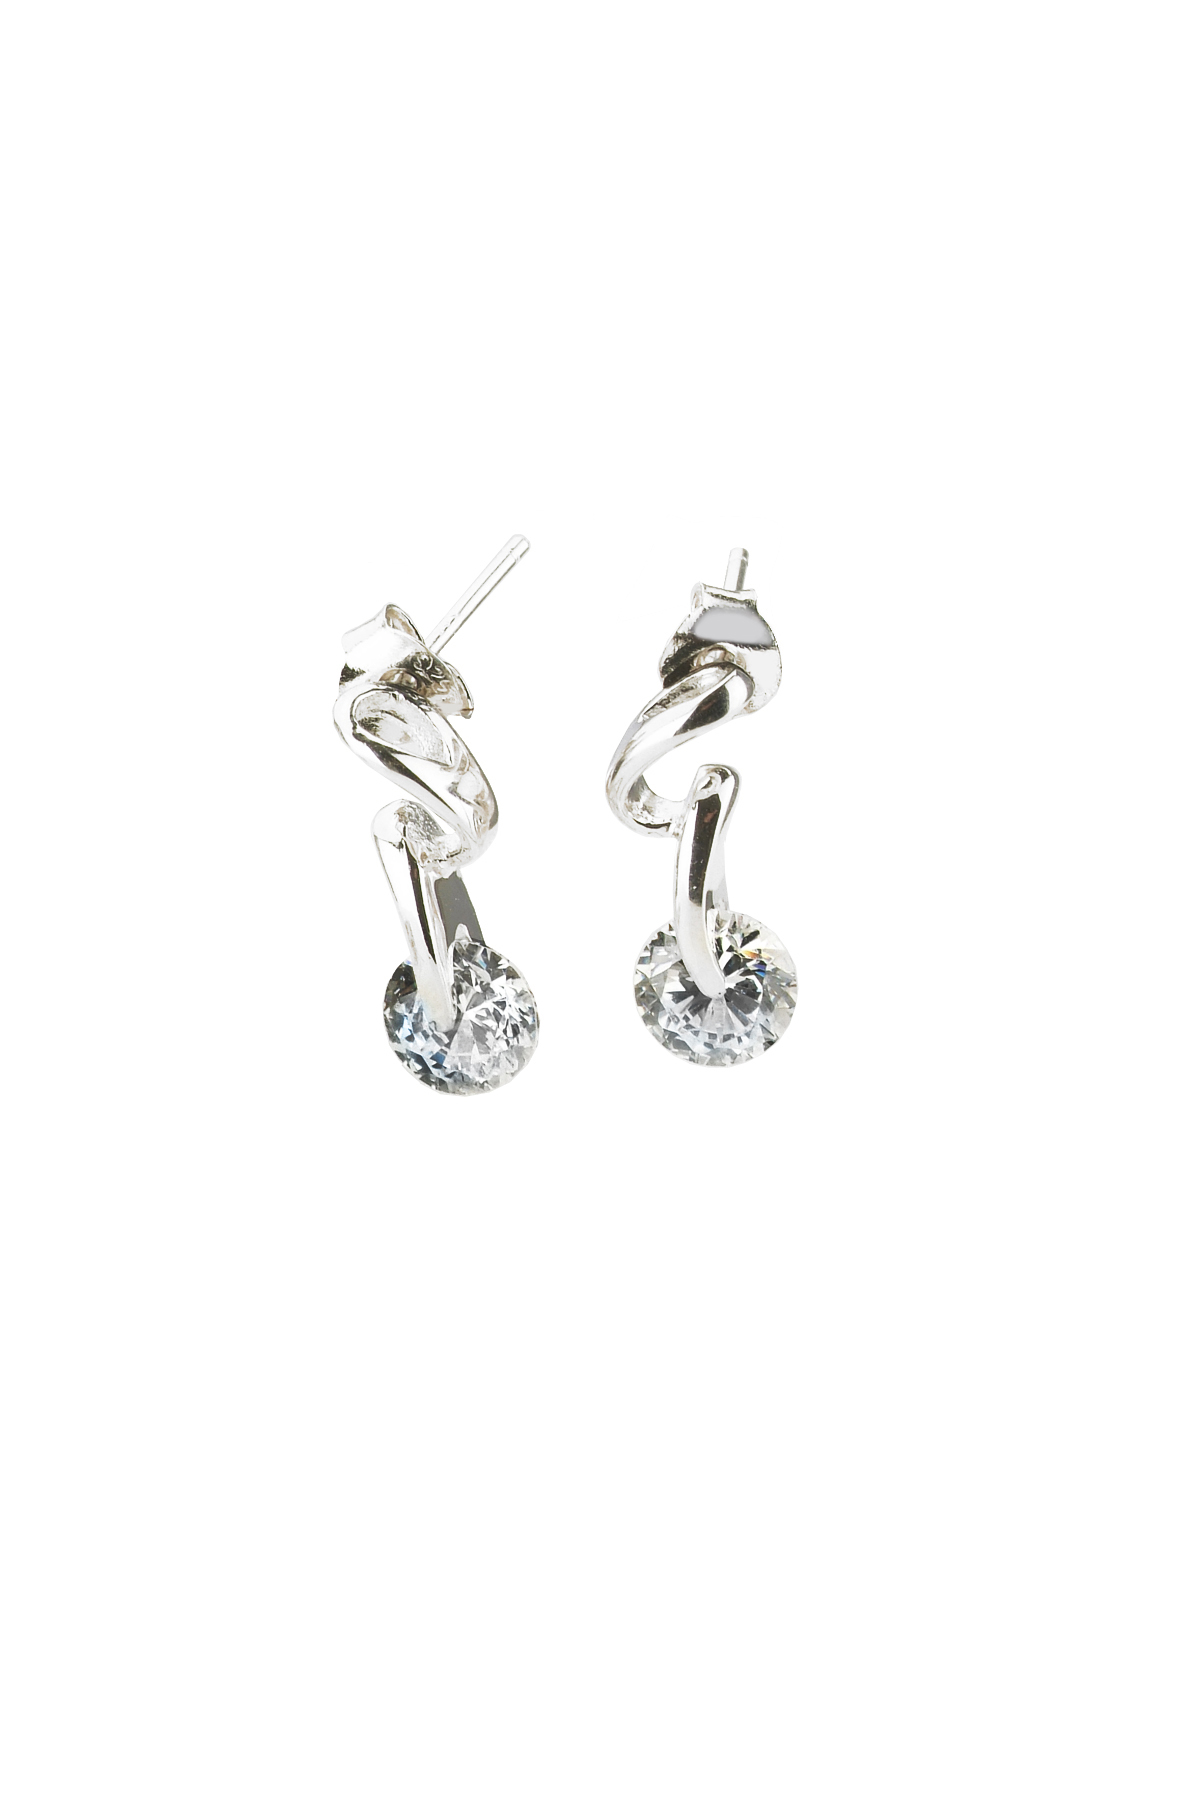 Cubic Zirconia (.925) Sterling Silver Small Drop Earrings